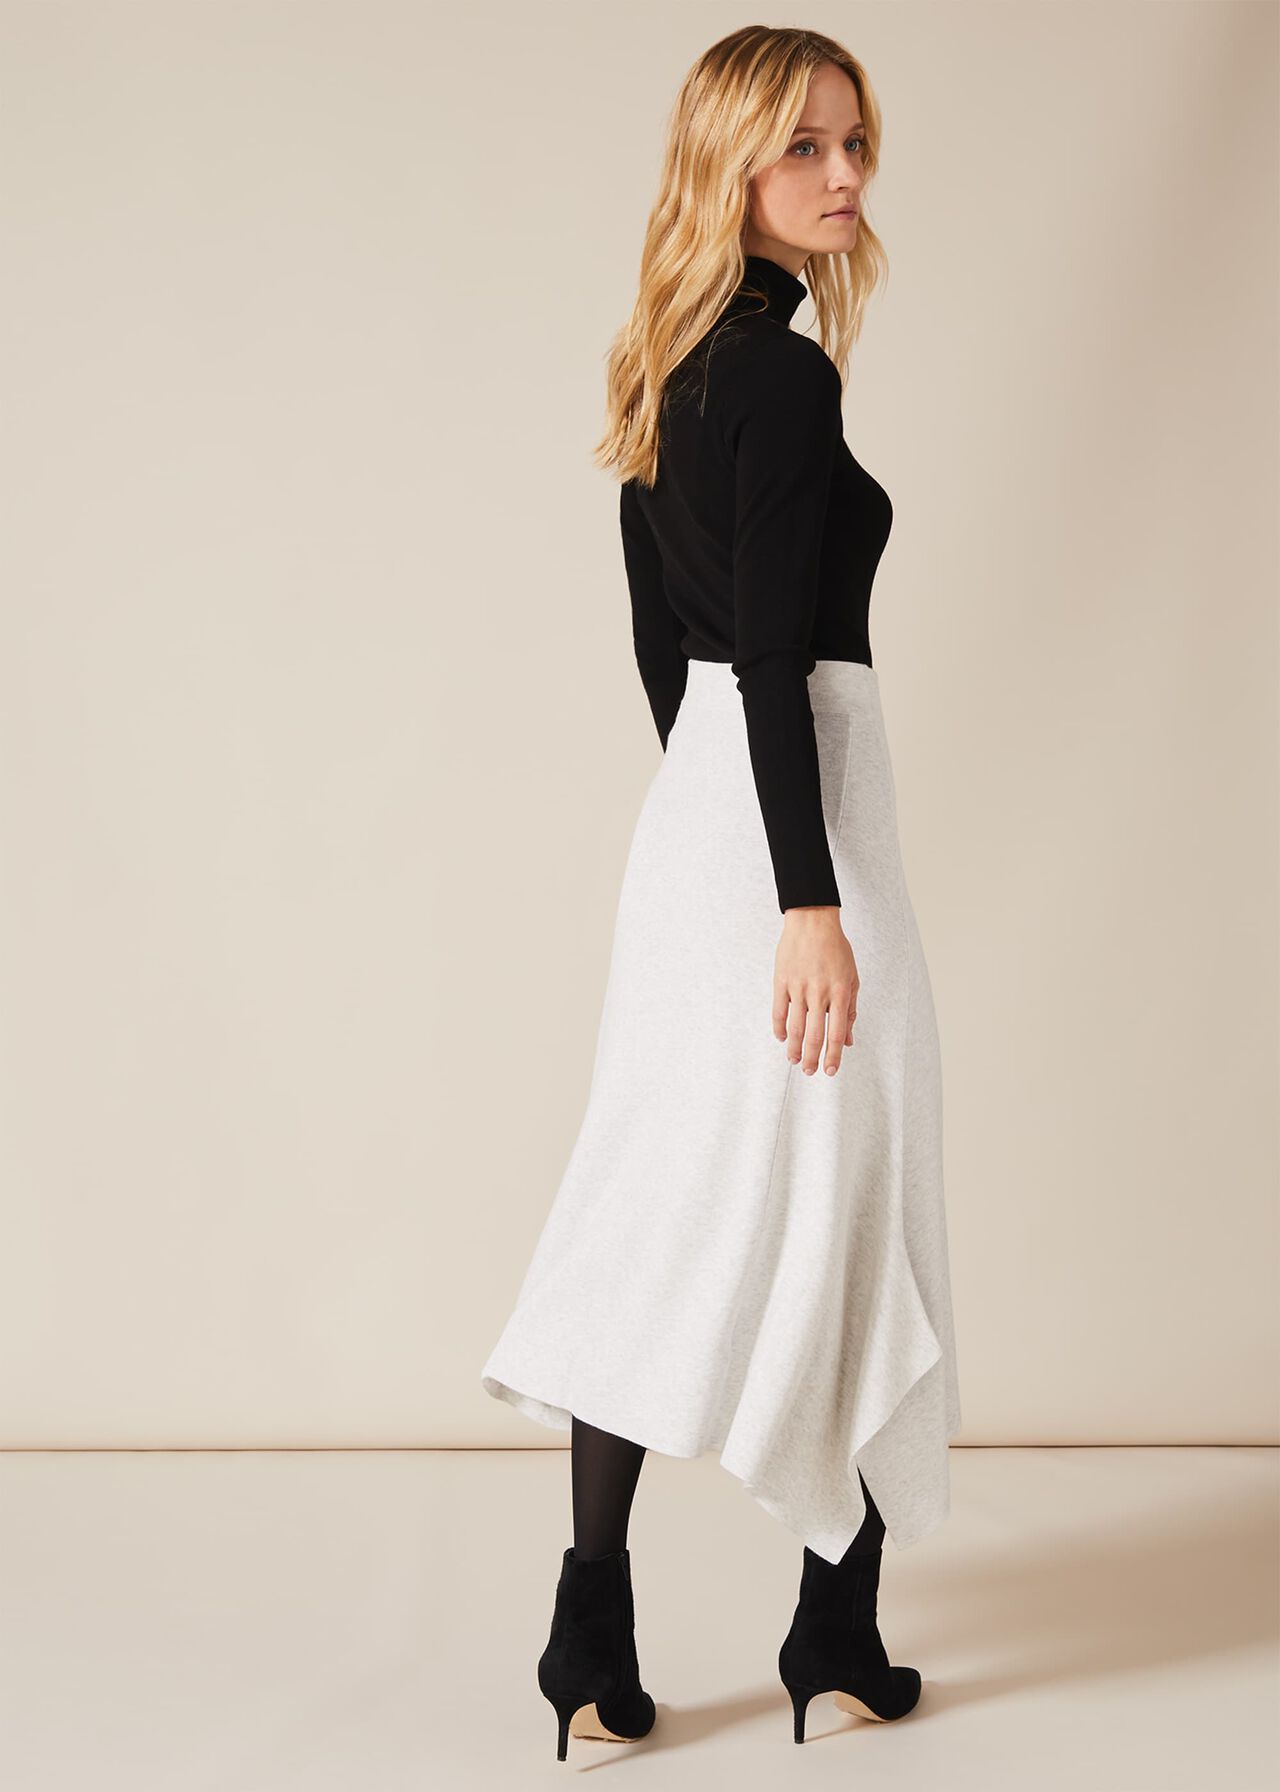 Alexana Asymmetric Skirt